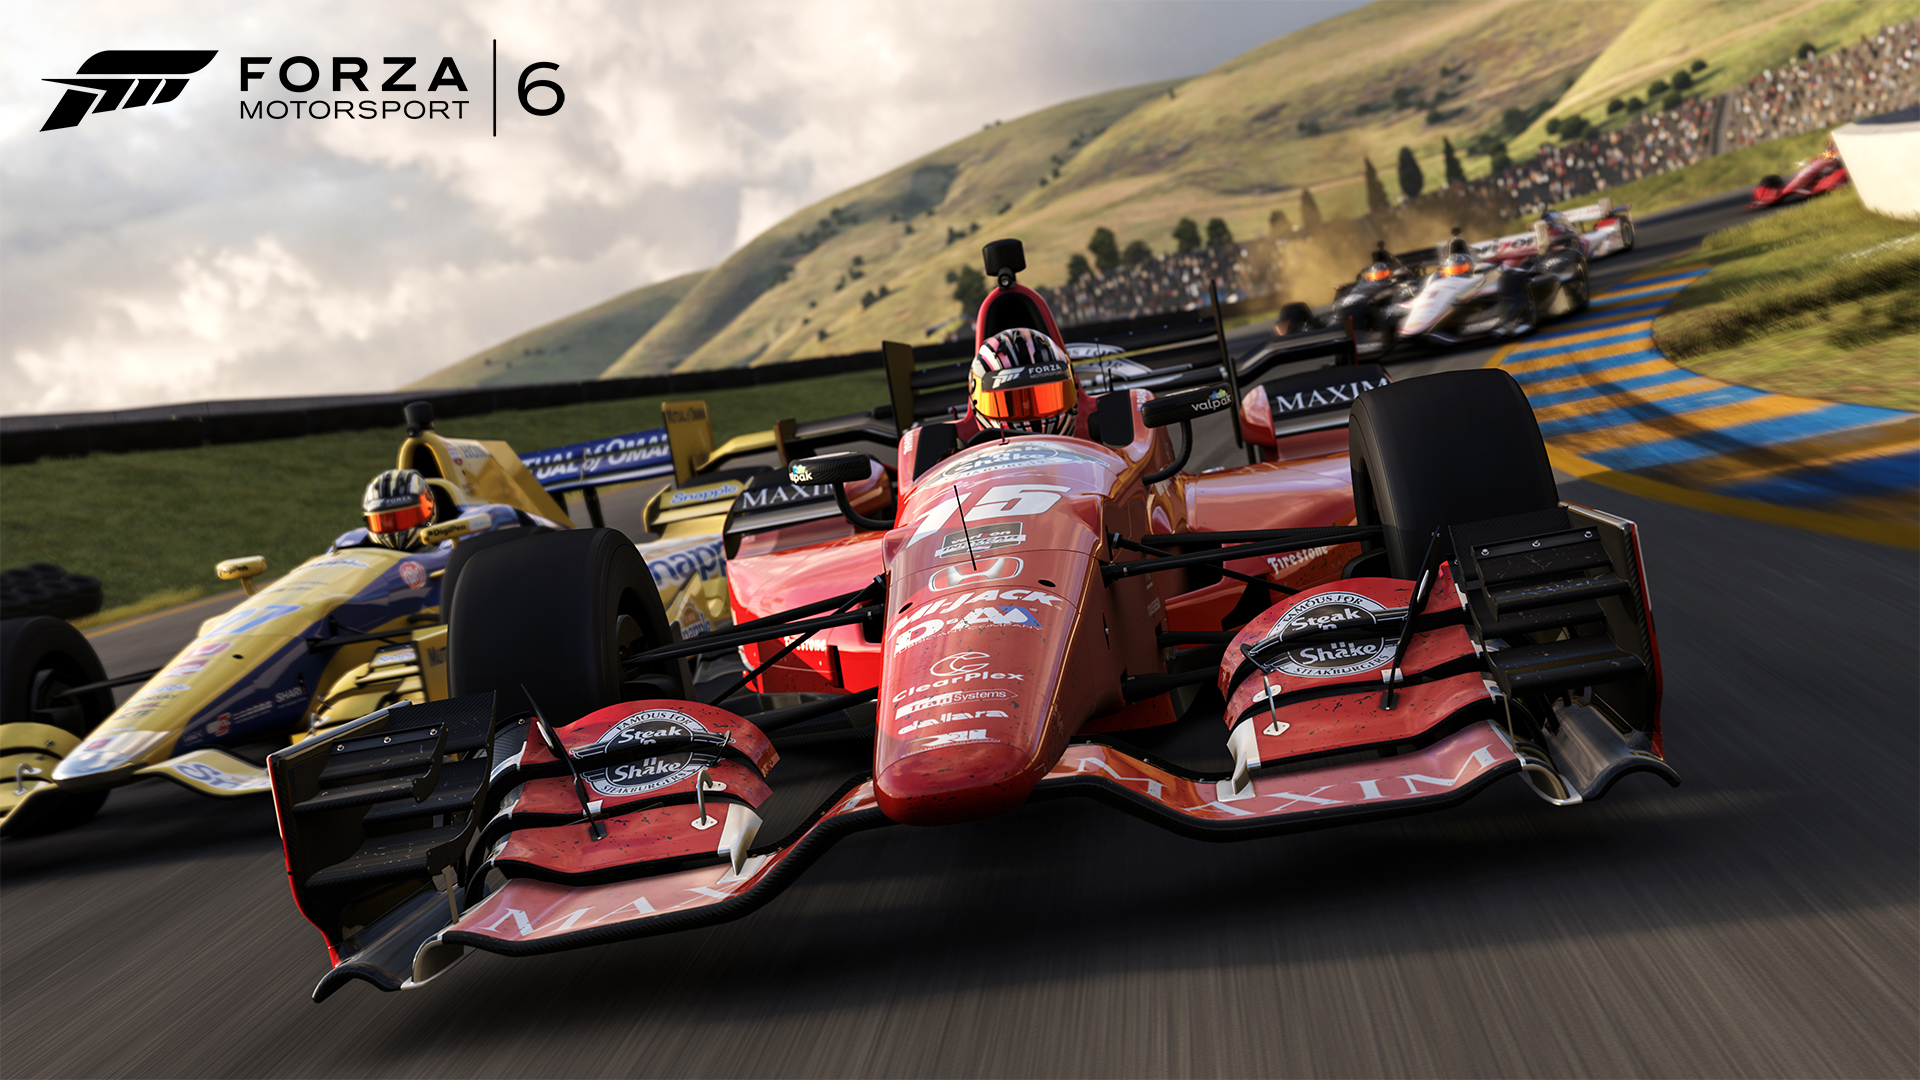 Racing in Forza Motorsport 6